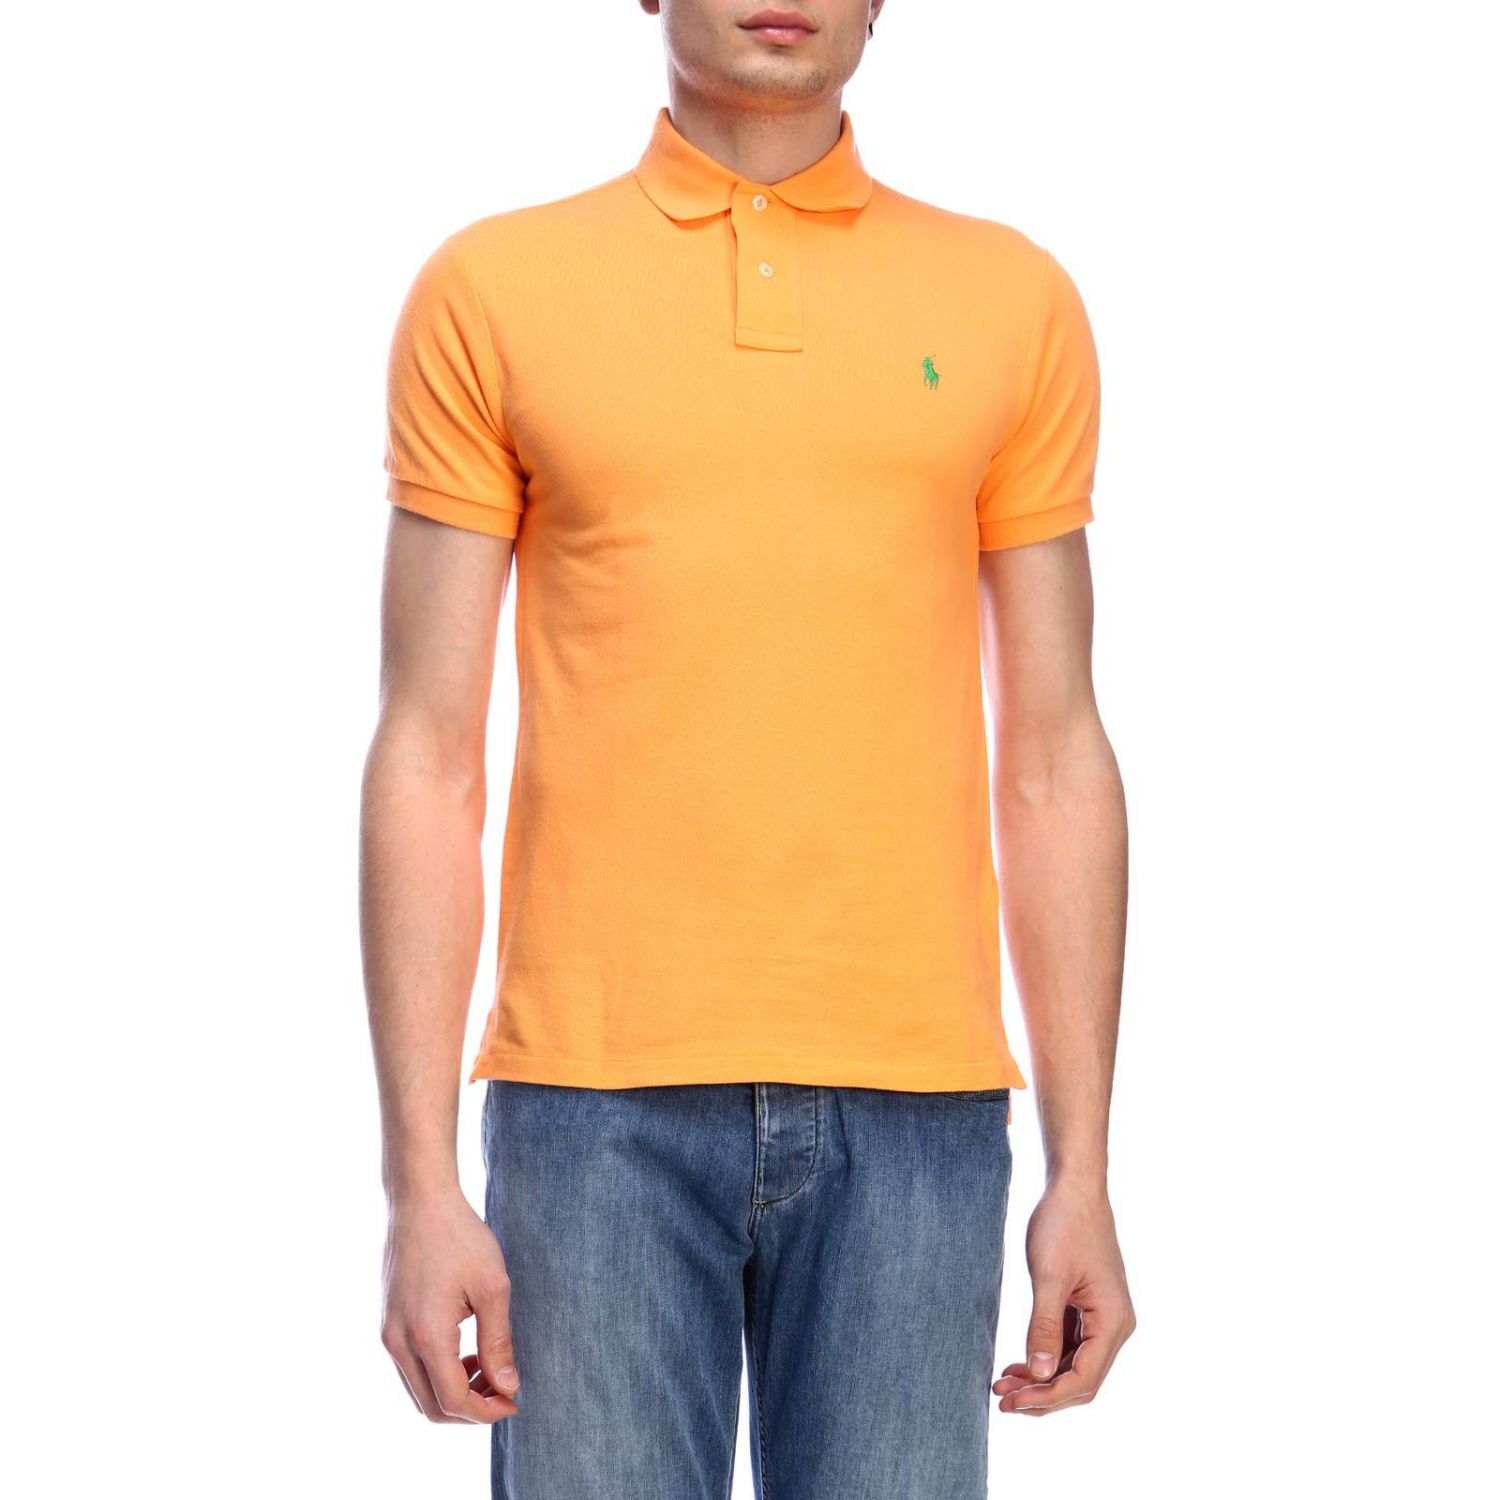 Polo Ralph Lauren Outlet: T-shirt men - Tangerine | T-Shirt Polo Ralph ...